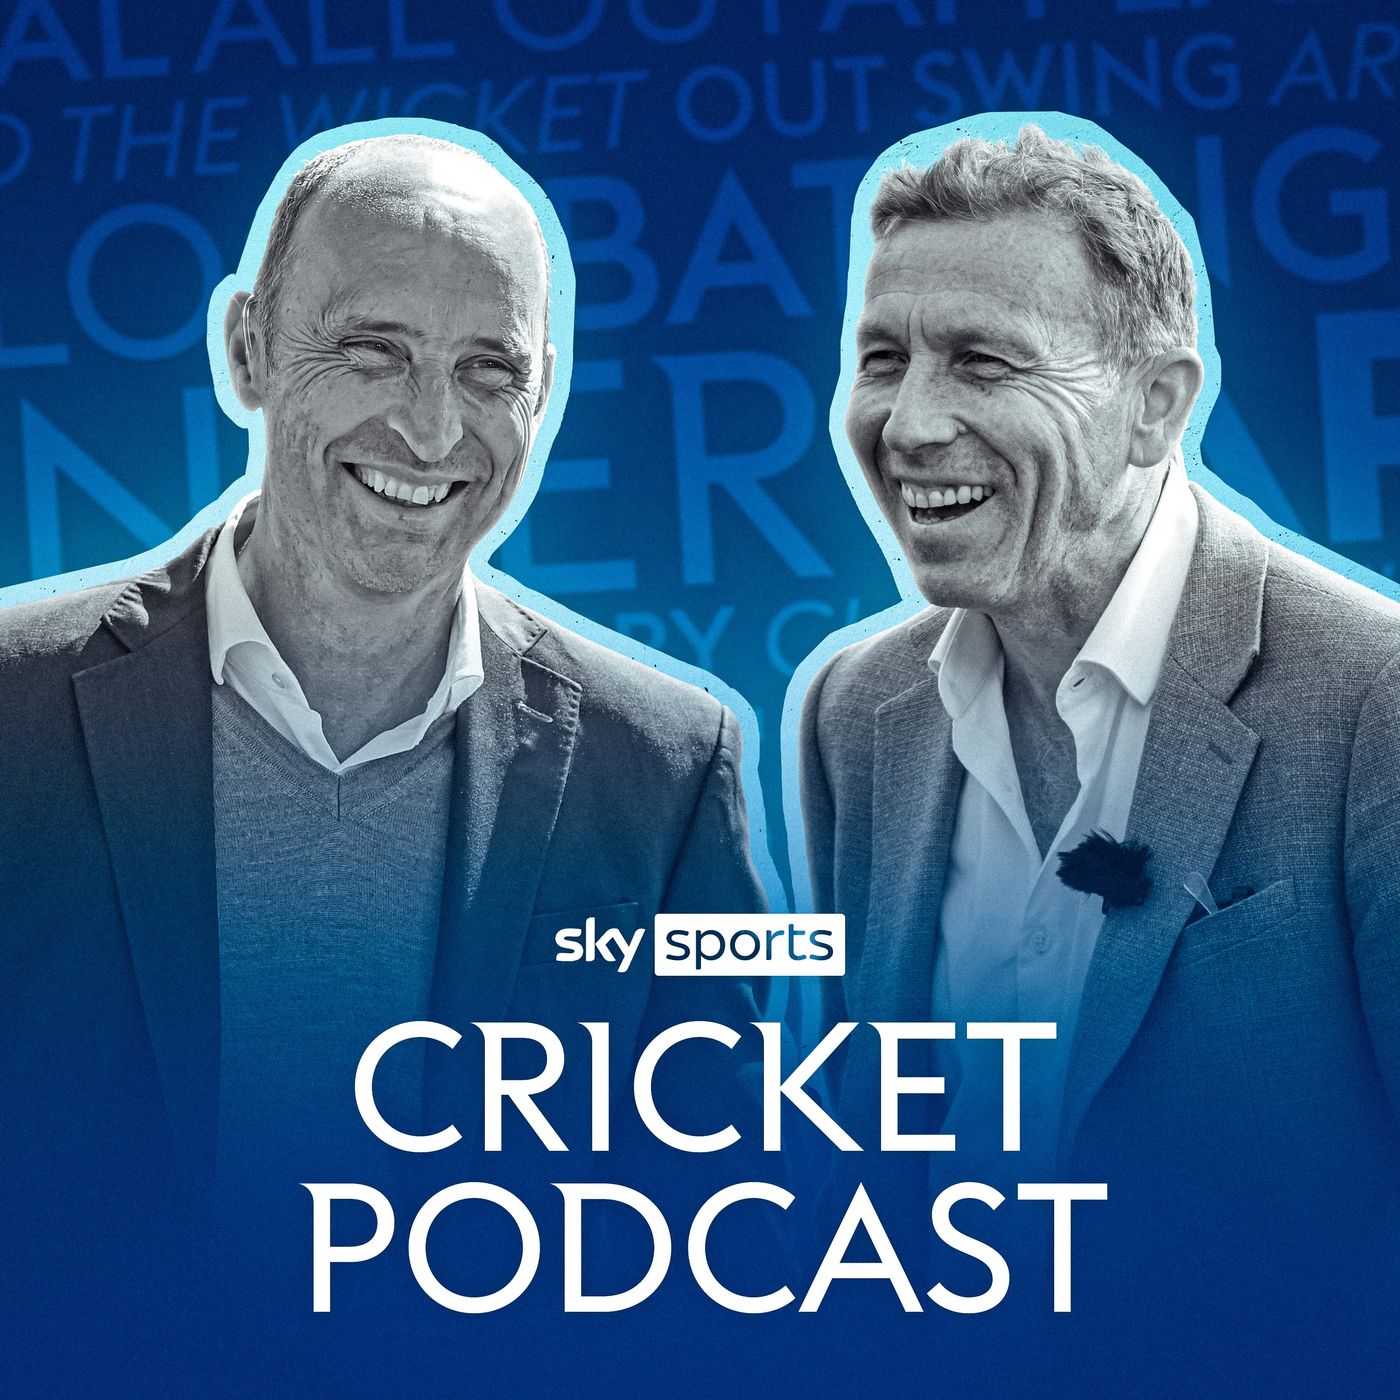 Sky Sports Cricket Podcast:Sky Sports